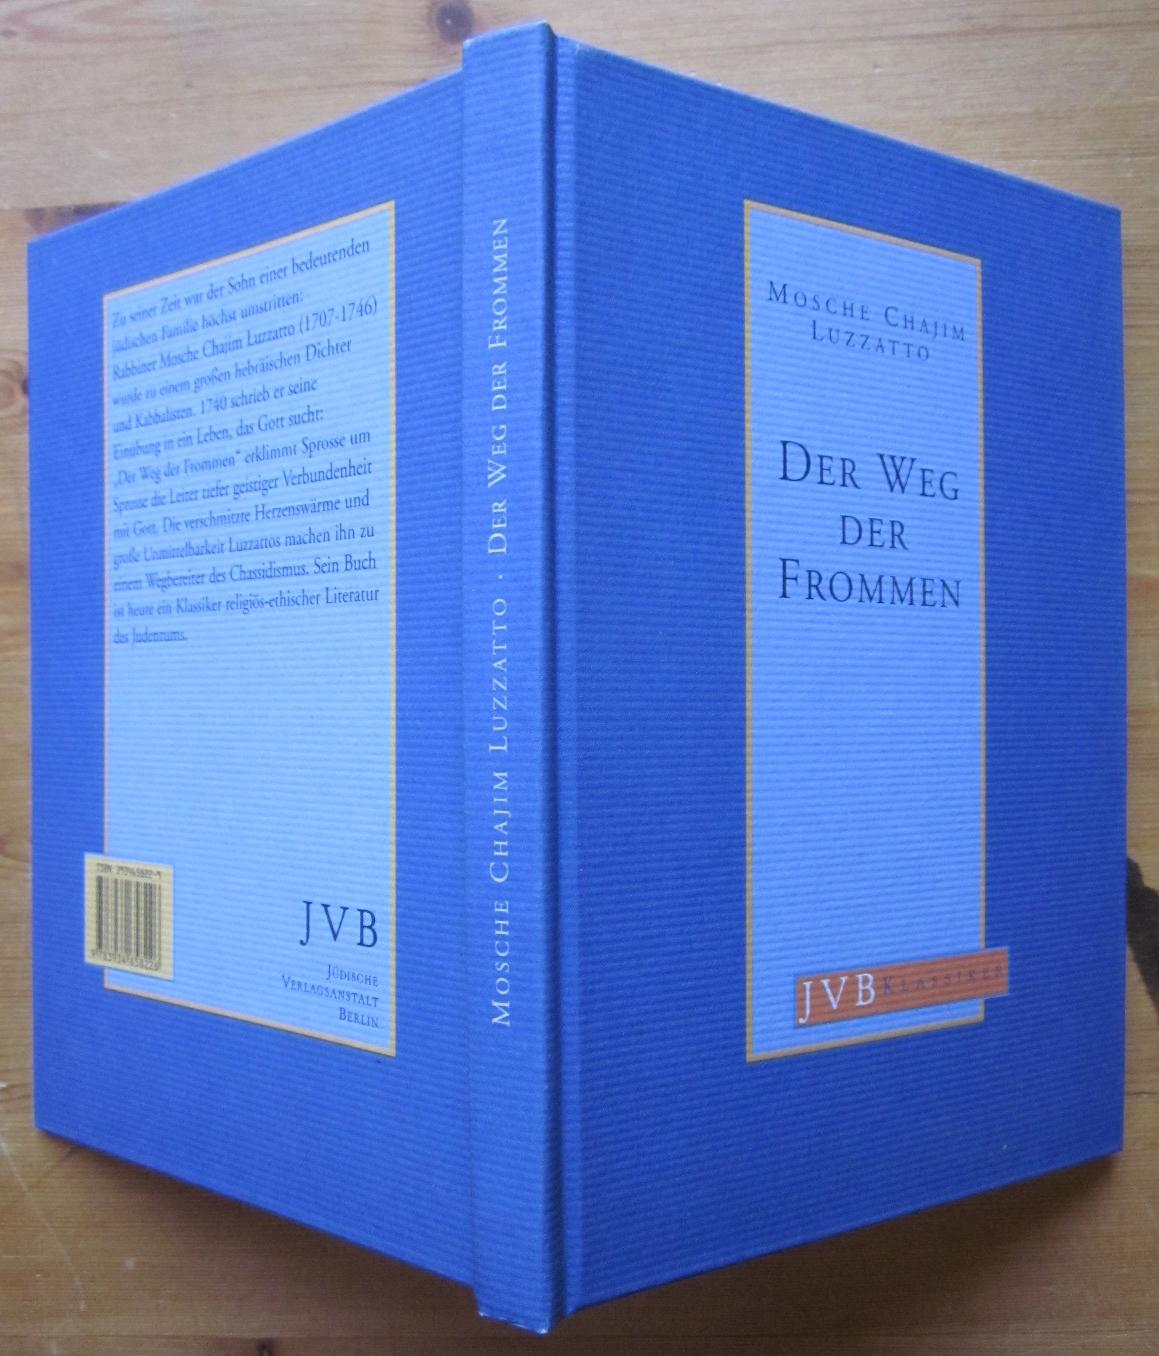 Der Weg der Frommen. Eine Auswahl nach der Übersetzung von J. Wohlgemuth. Herausgegeben von Walter Homolka. - Luzzato, Mosche Chajim